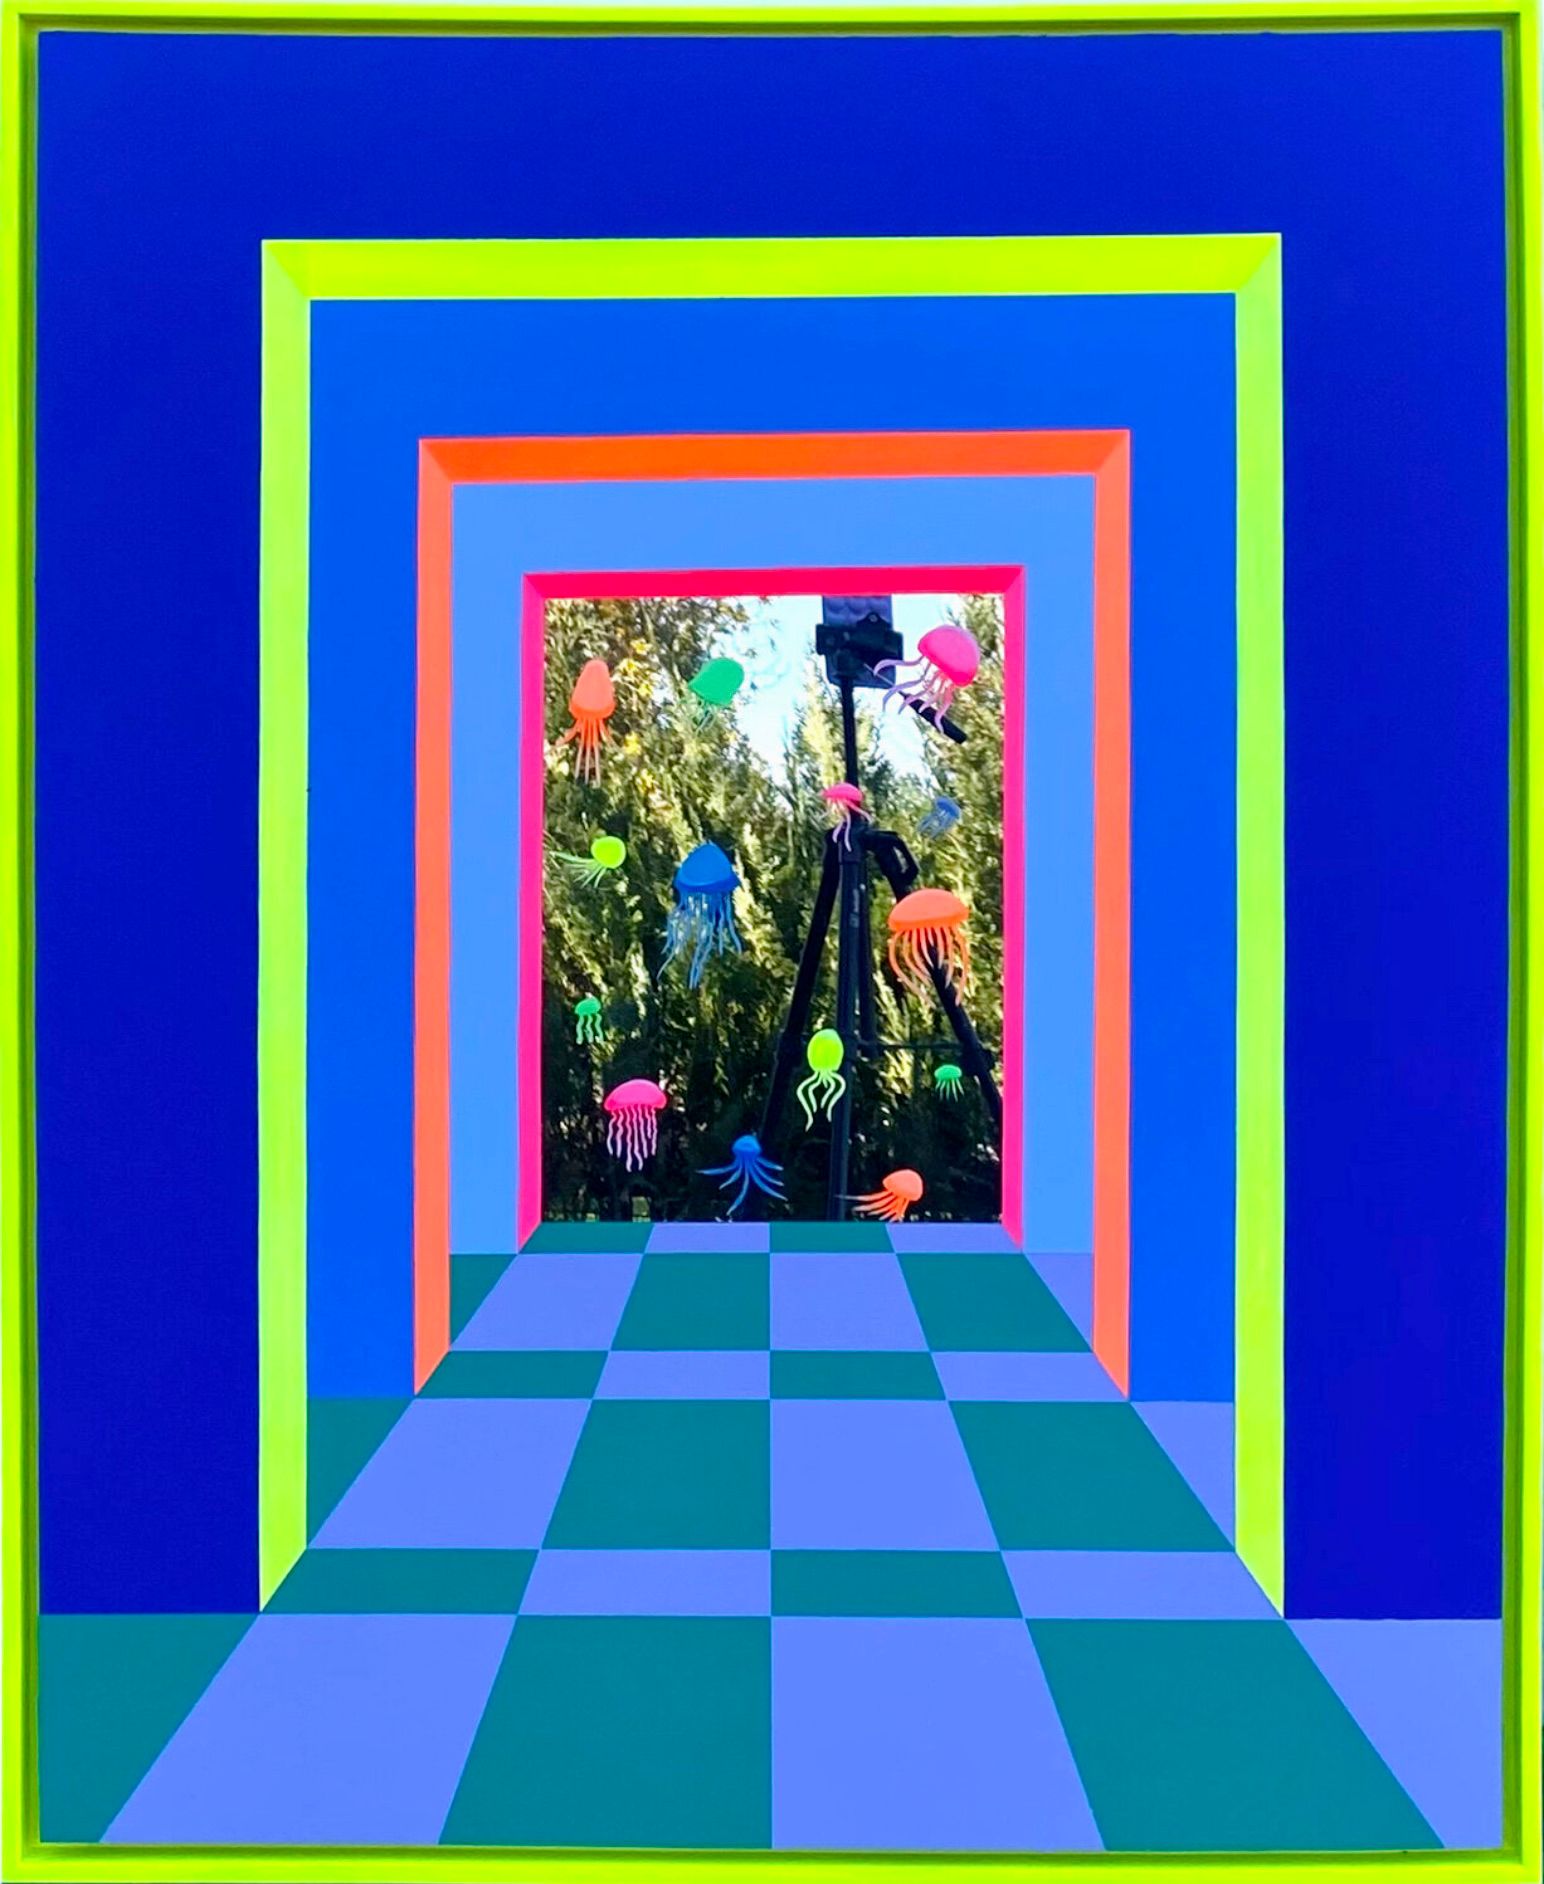 Isabelle Derecque, "The aquarium" Peinture colorée, dans un lieu mystérieusement coloré, habité par des créatures marines et peint sur des miroirs en plexiglas en style pop-up avec des couleurs joyeuses et énergiques. Visualisé par la géométrie, les perspectives, les contrastes et les reflets.